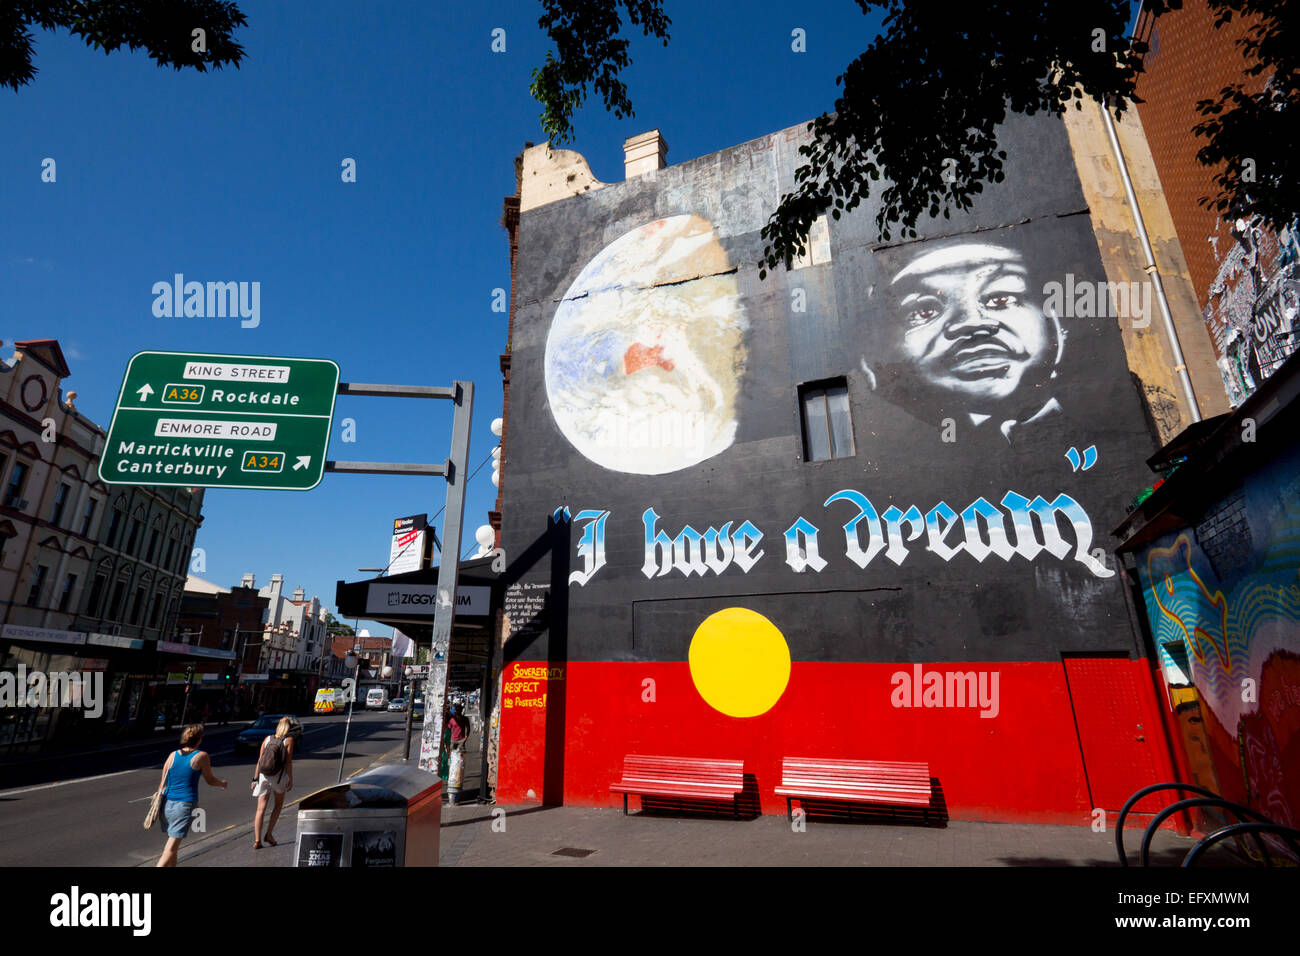 'I Have a Dream" Martin Luther King sur les murales sur le mur de fond du pavillon de la rue King Ouest intérieure Newtown Sydney banlieue nw Banque D'Images